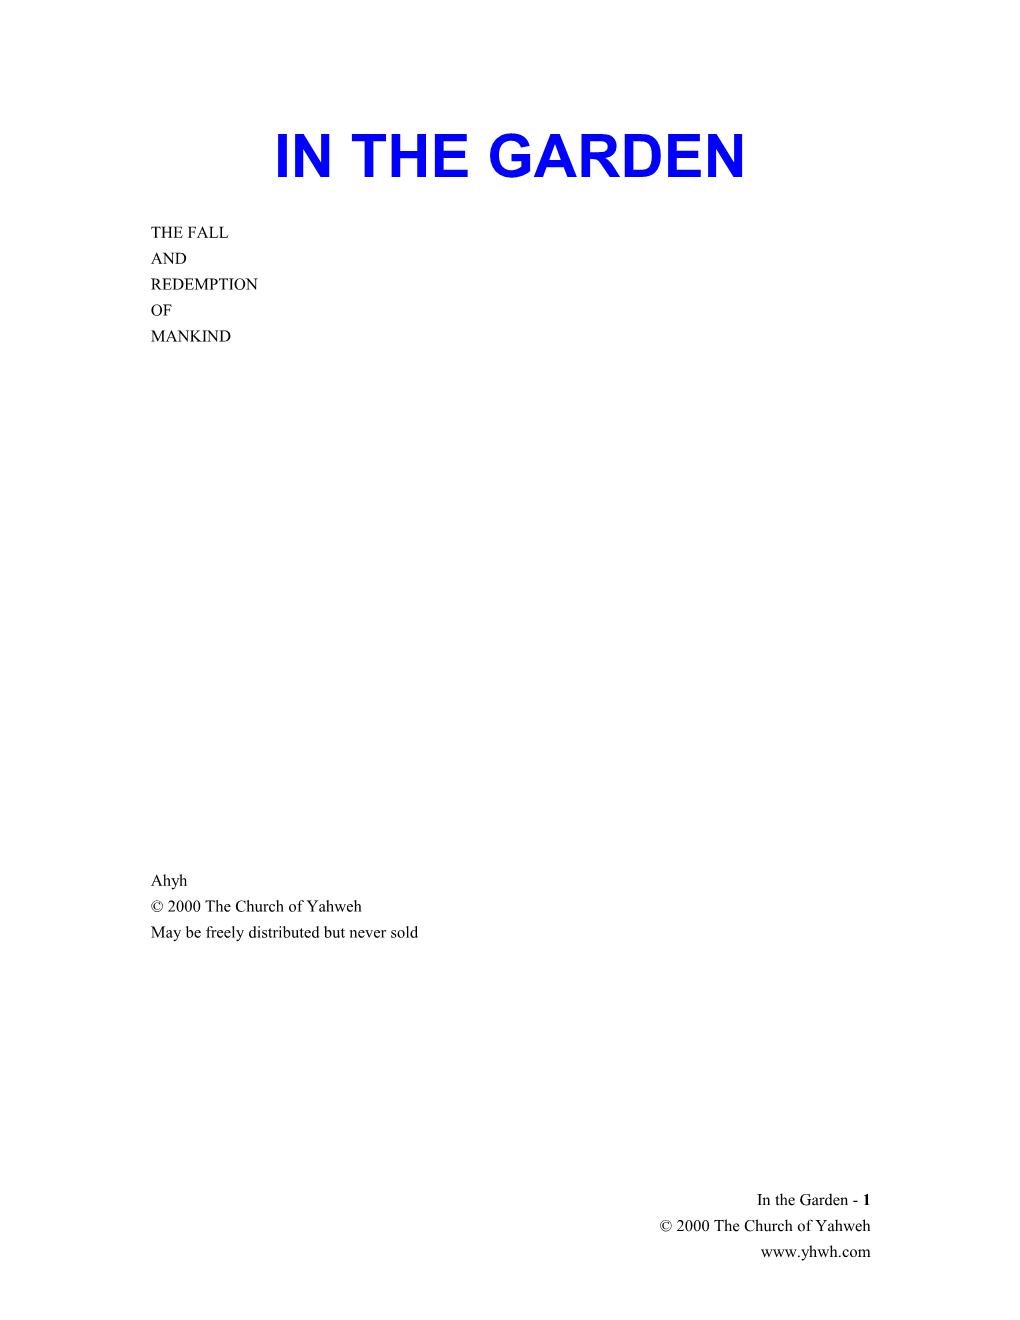 In the Garden - TOC